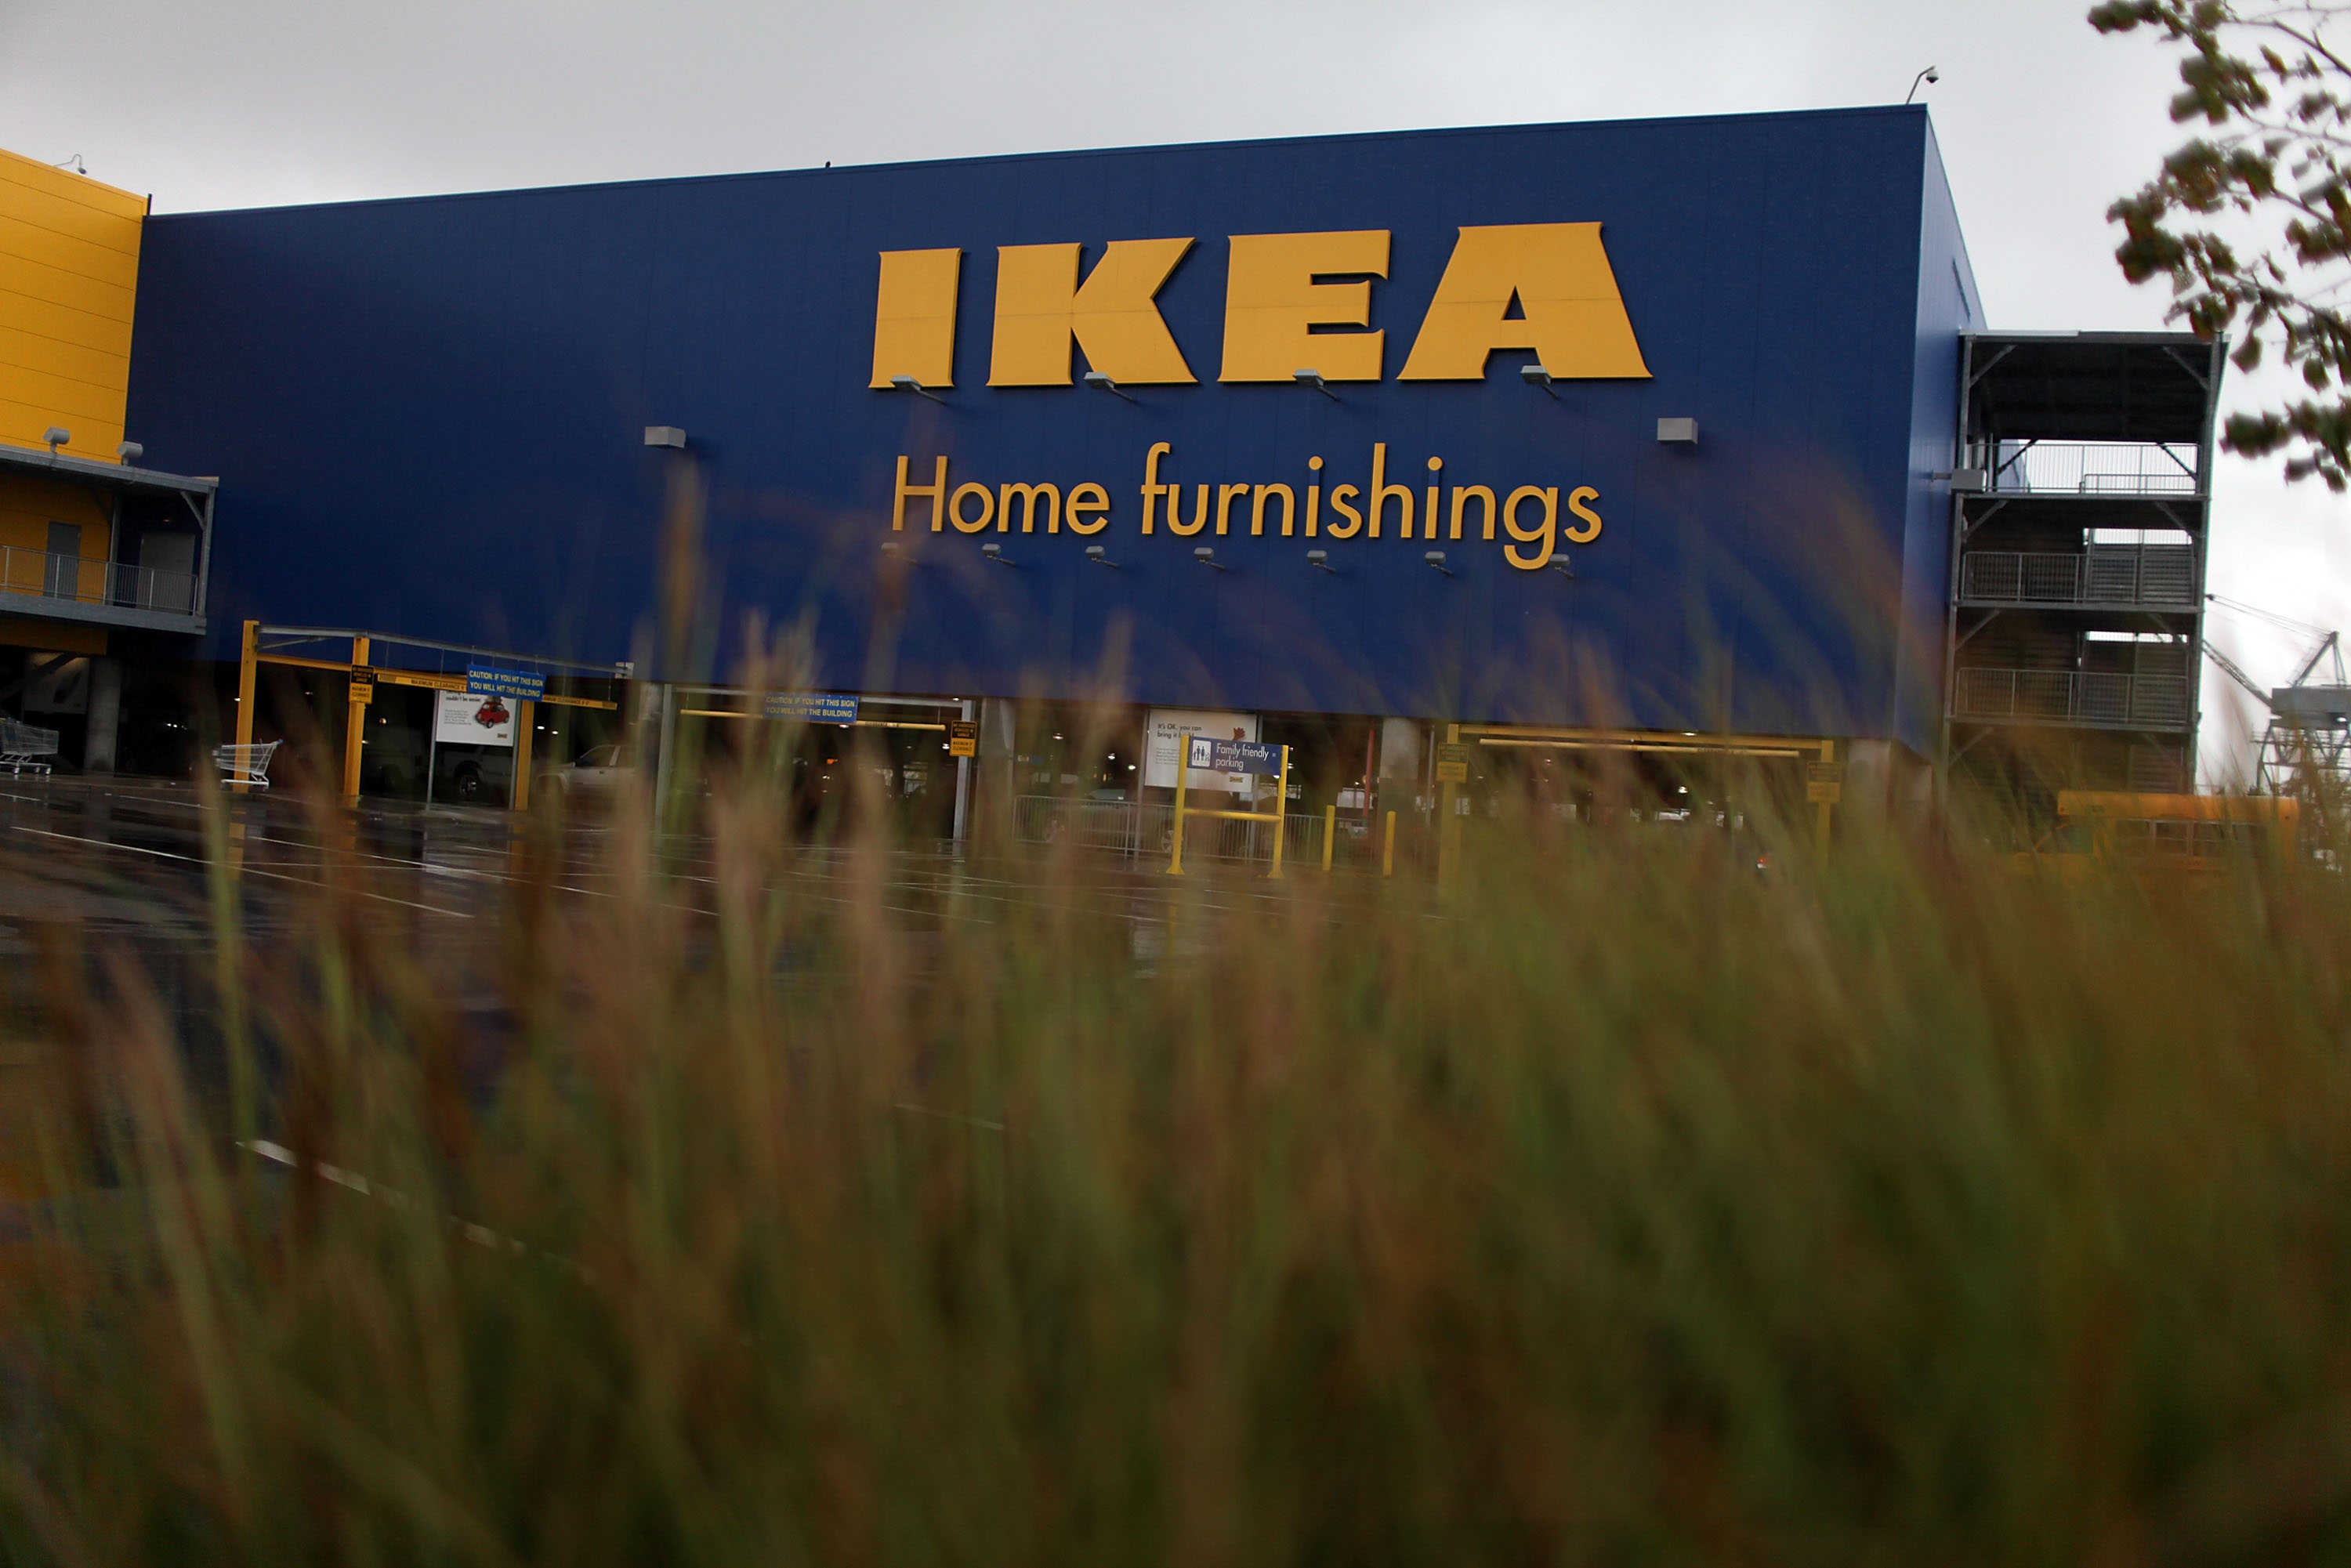 Ikea to test furniture rental